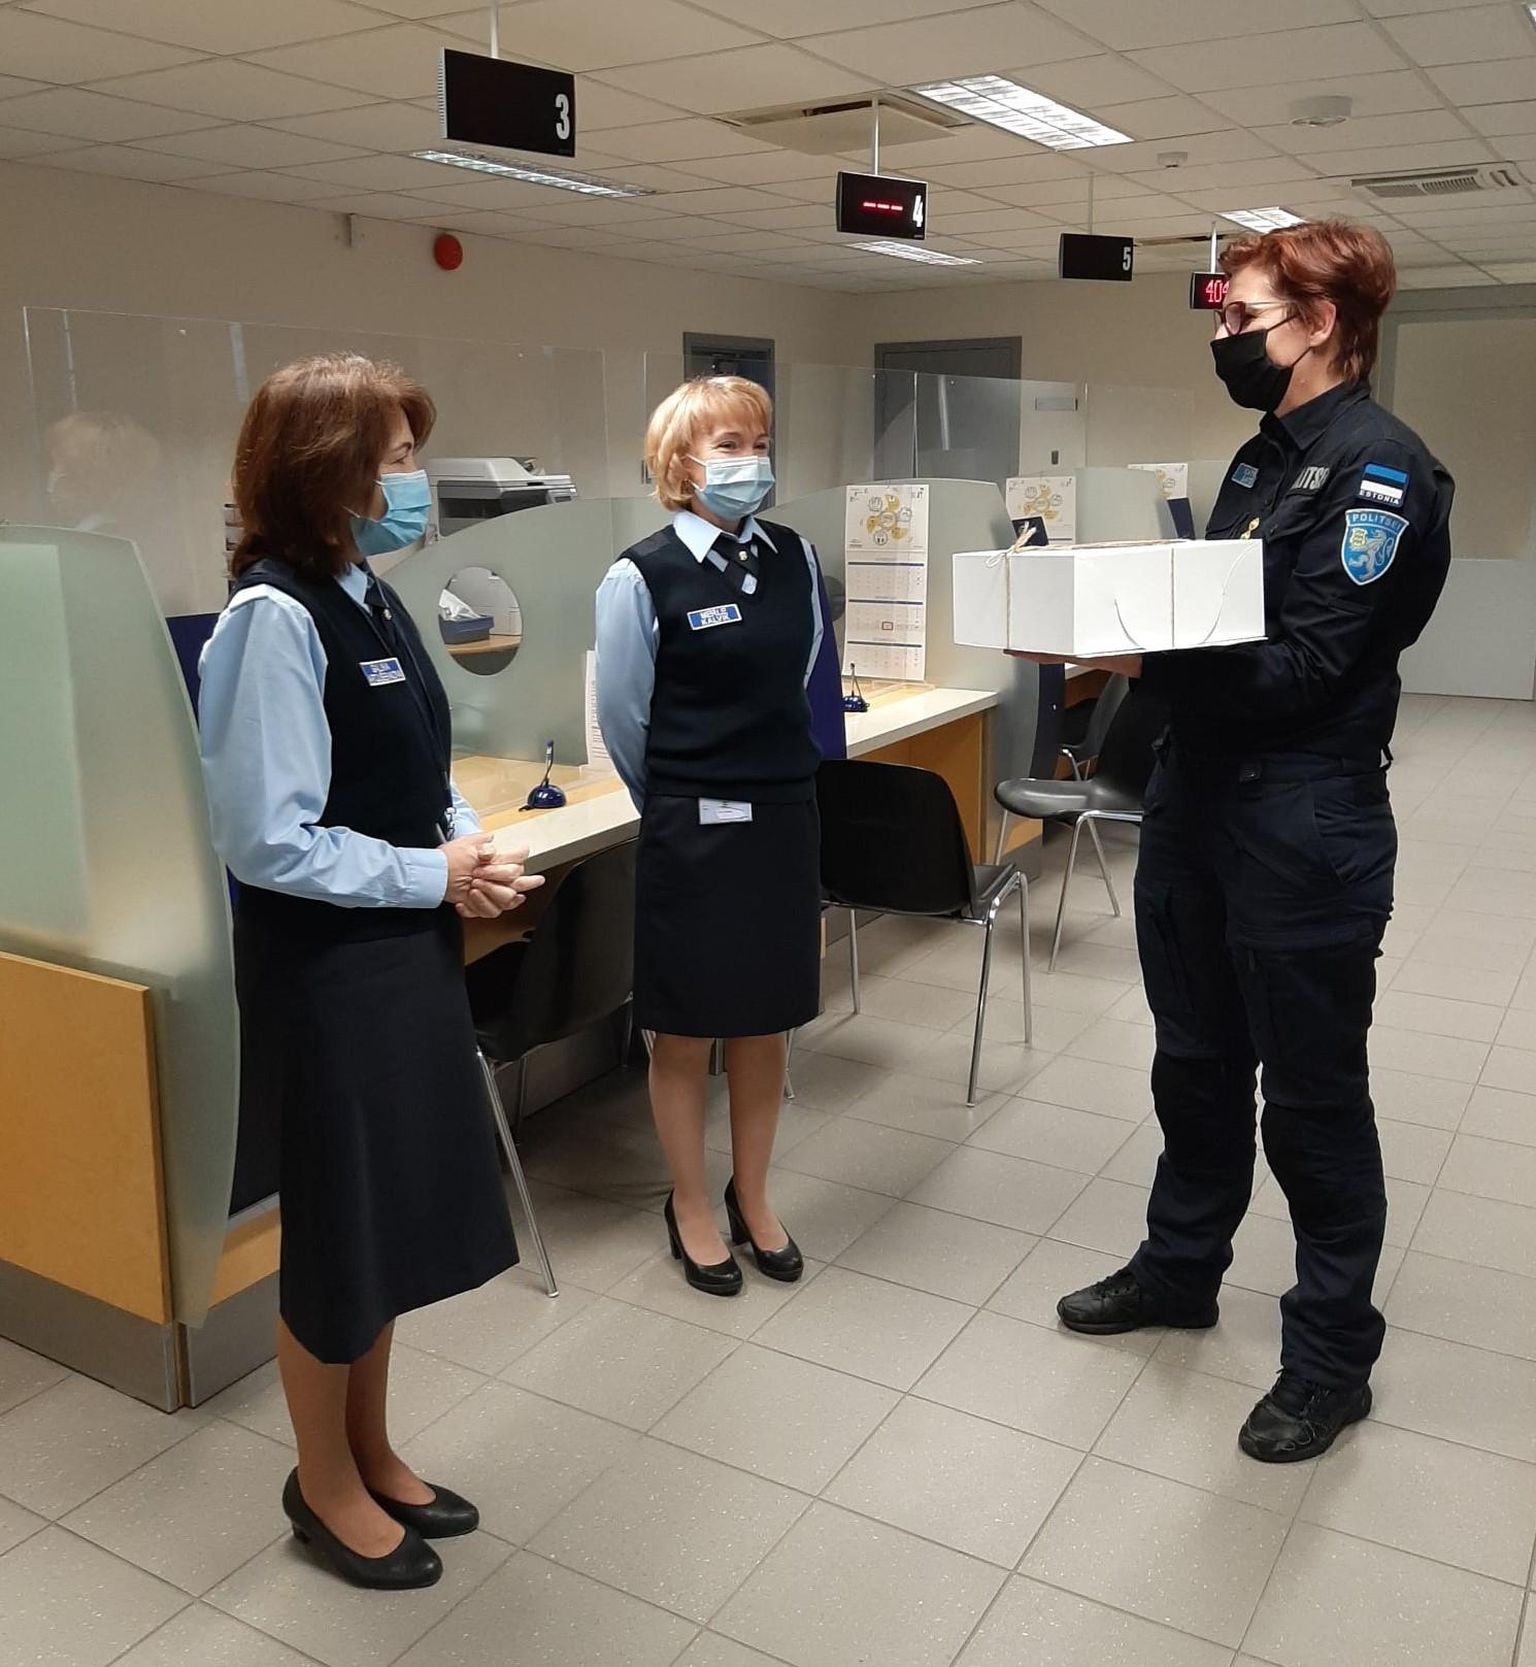 Rakvere politseijaoskonna juht Katrin Satsi õnnitles maakonnakeskuses politseijaoskonna klienditeenindajaid, kelle igapäevatööks on muu hulgas dokumentide väljastamine.